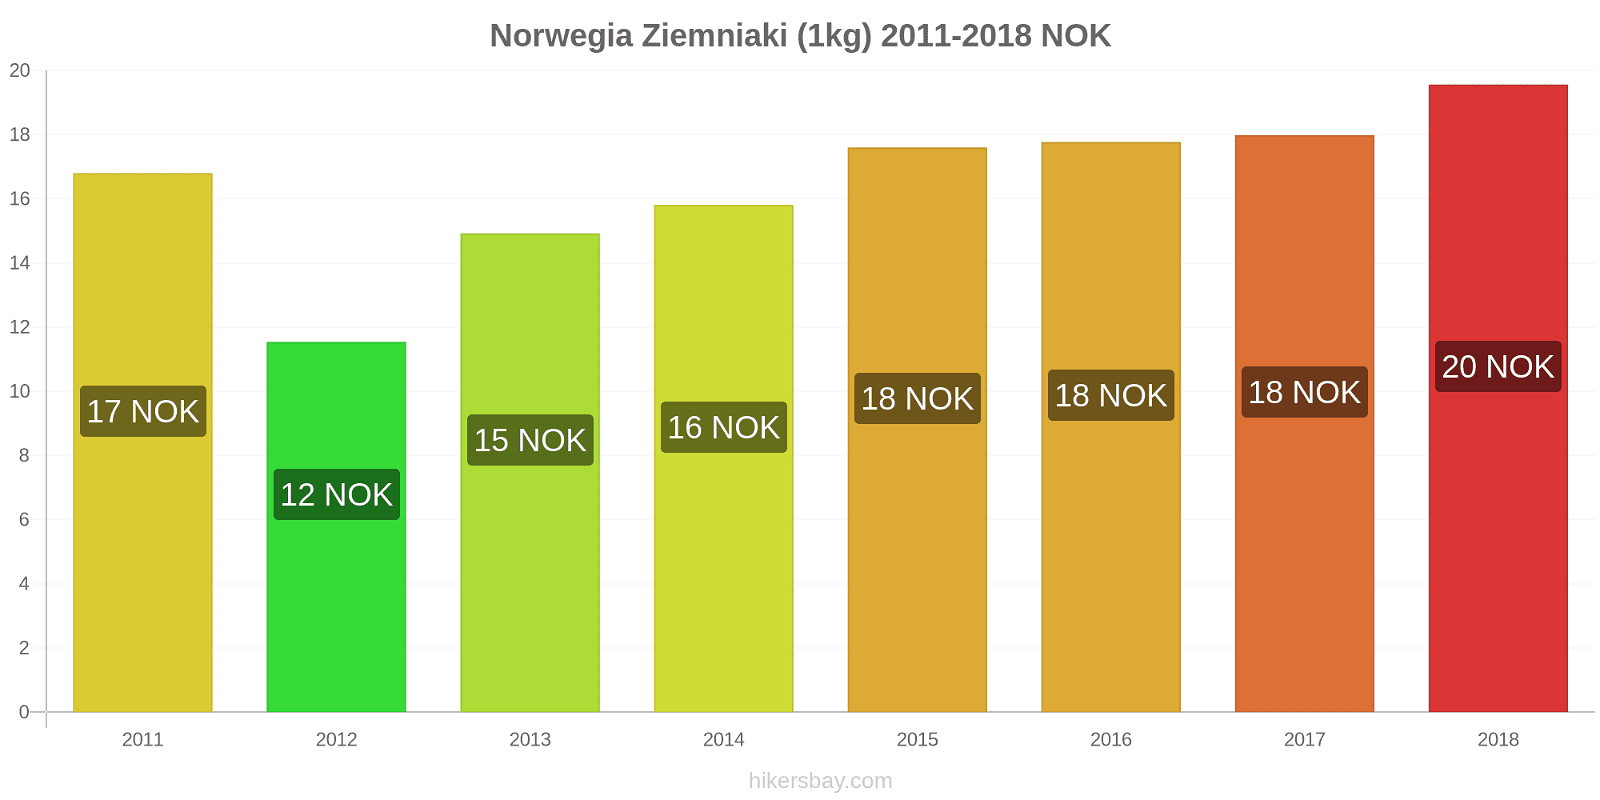 Norwegia zmiany cen Ziemniaki (1kg) hikersbay.com